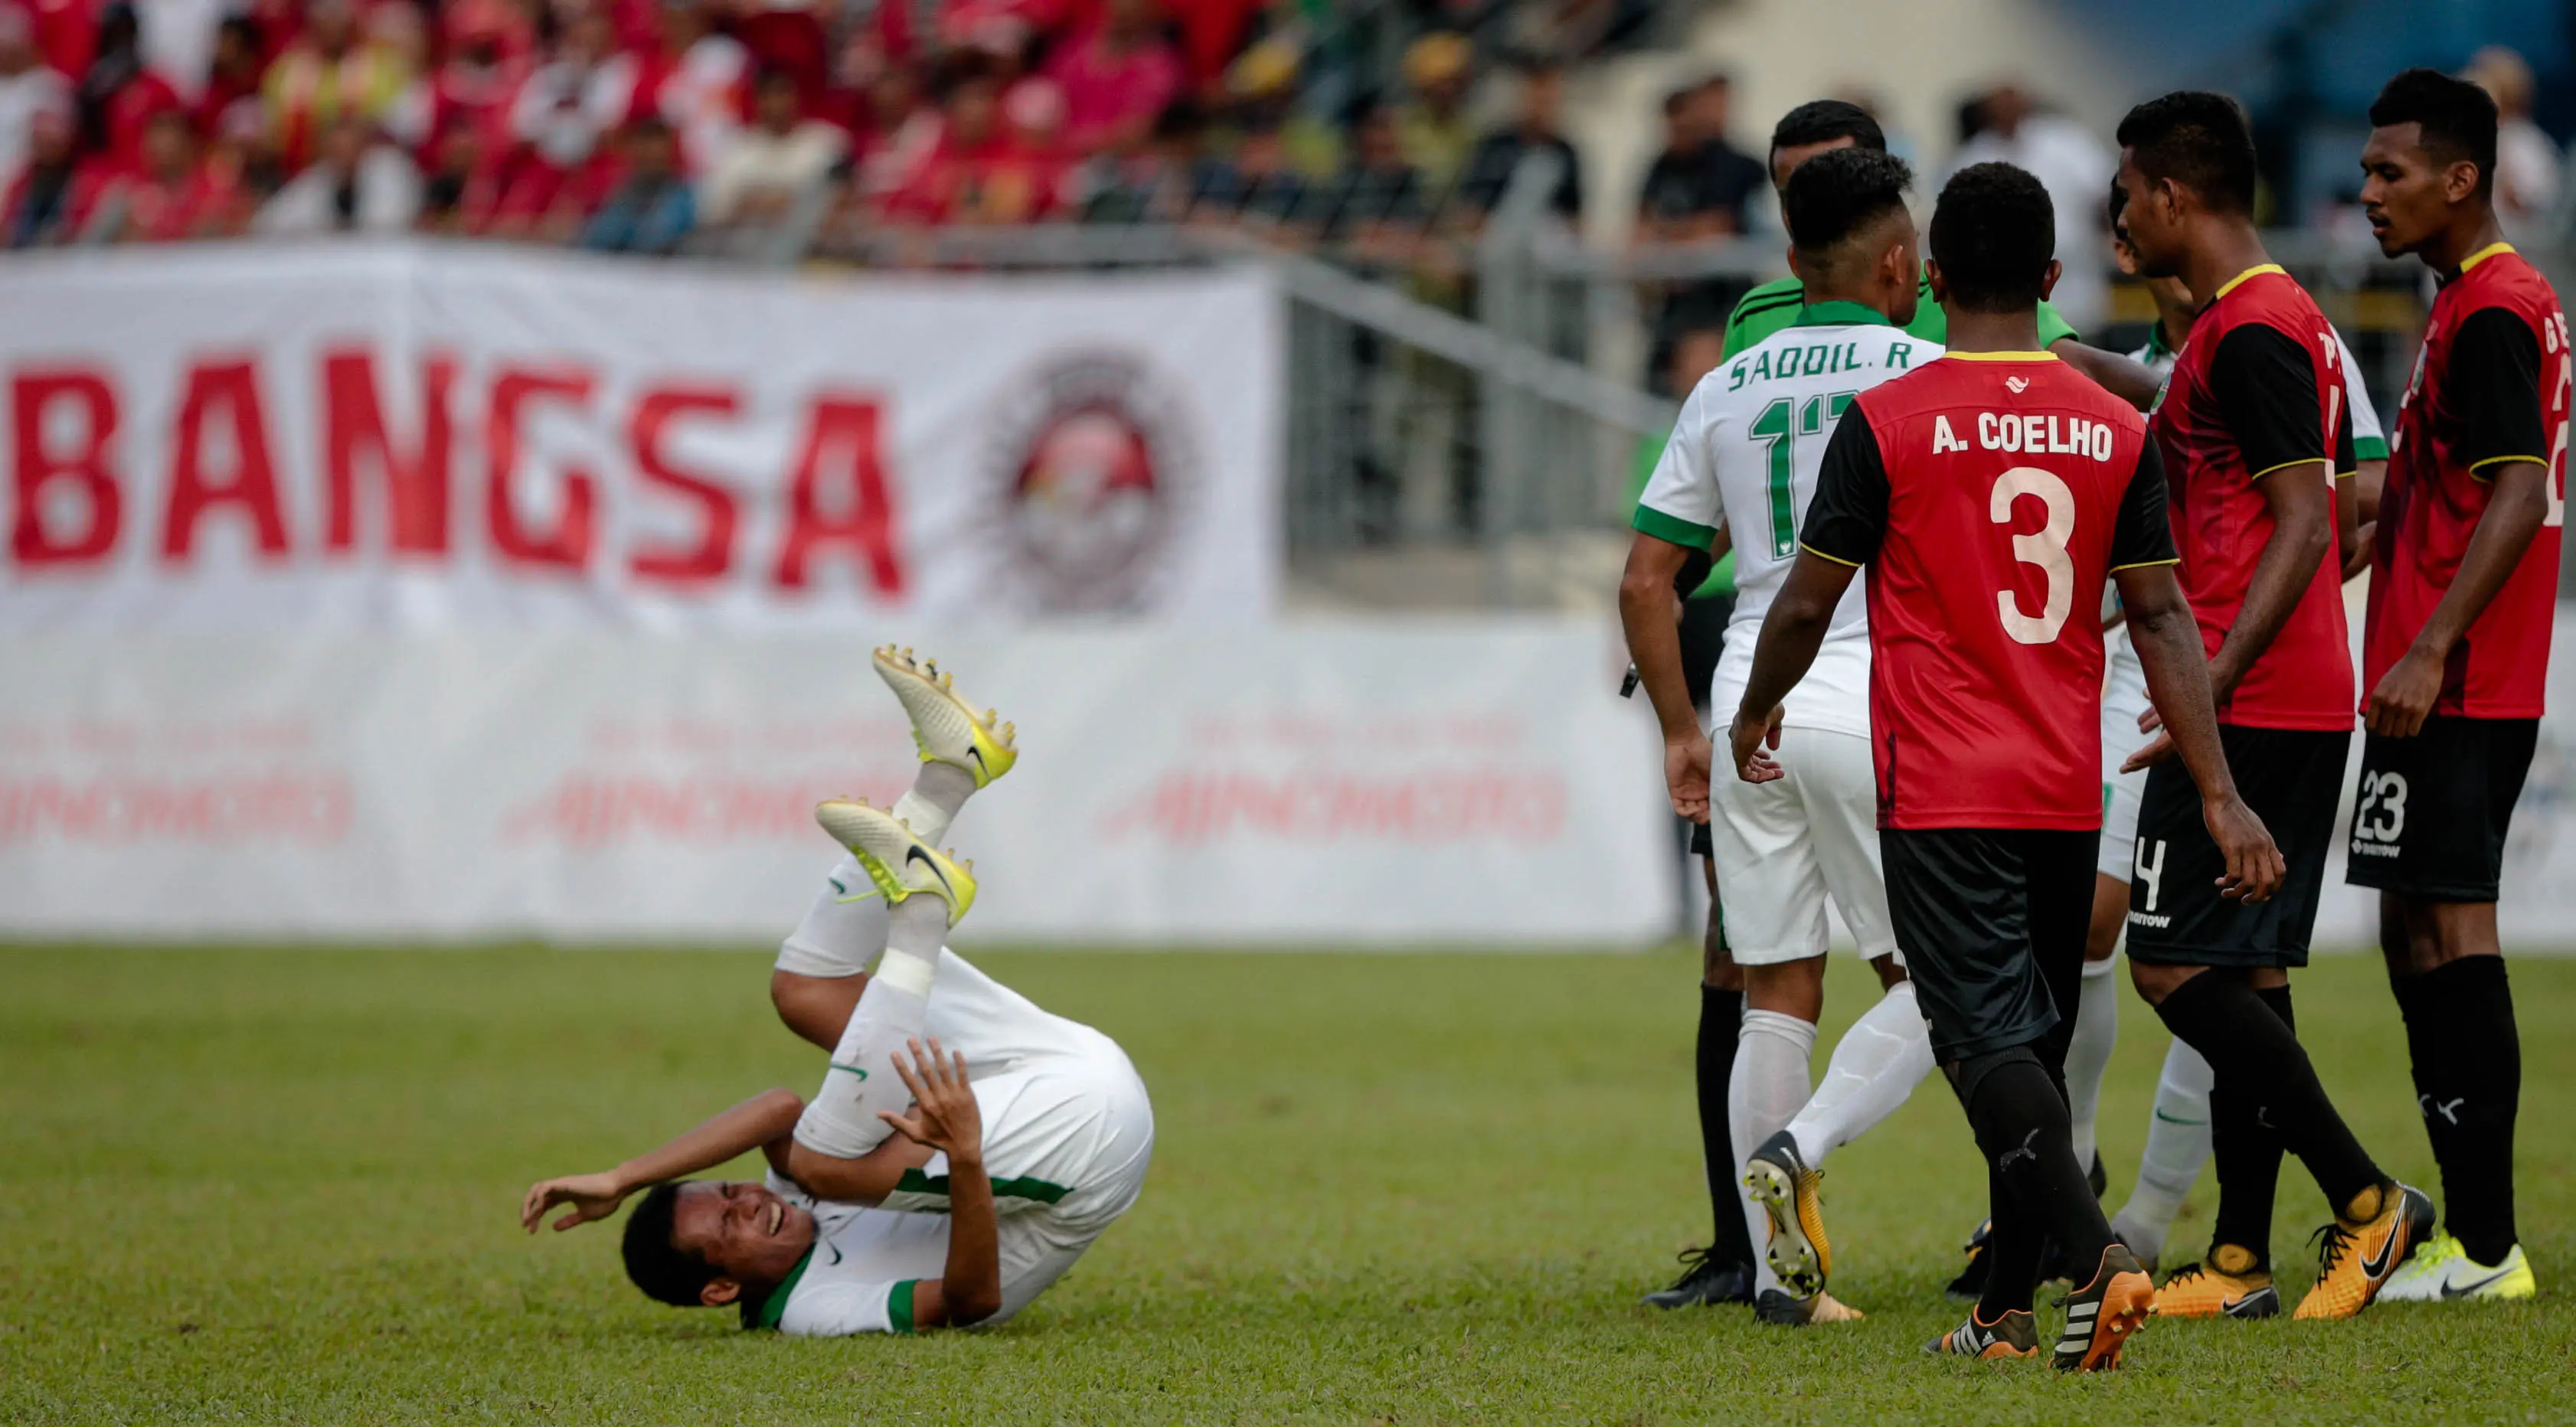 Evan Dimas terjatuh saat kericuhan terjadi pada laga ketiga Grup B SEA Games 2017 antara Timor Leste melawan timnas Indonesia U-22 di Selayang Stadium, Minggu (20/8/2017). (Liputan6.com/Faizal Fanani)